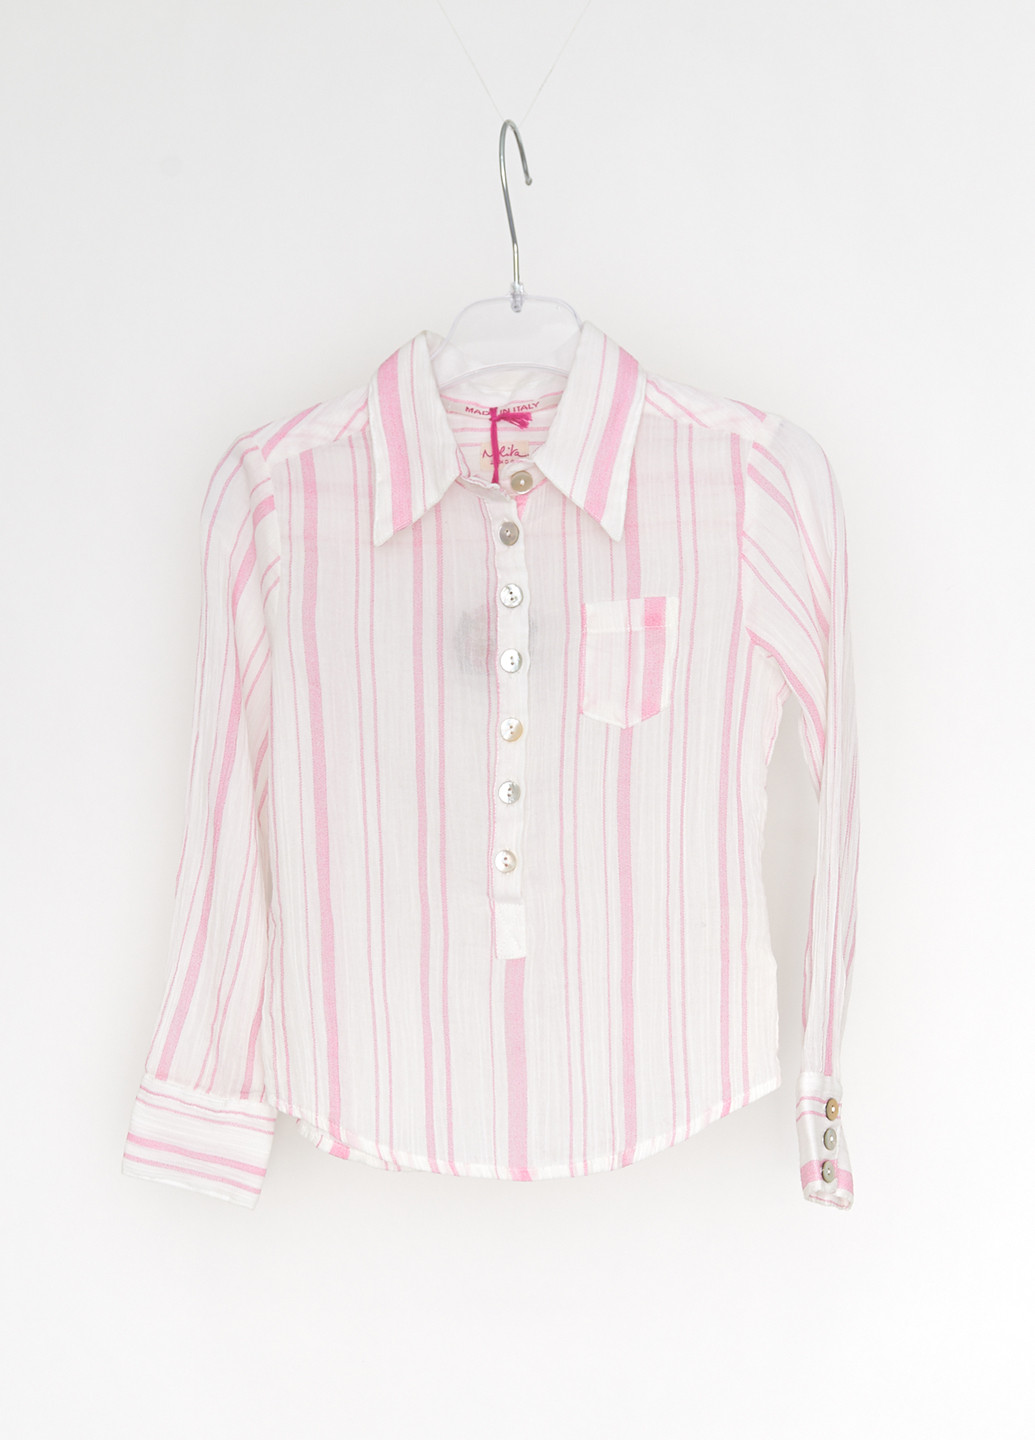 Светло-розовая в полоску блузка Nolita демисезонная